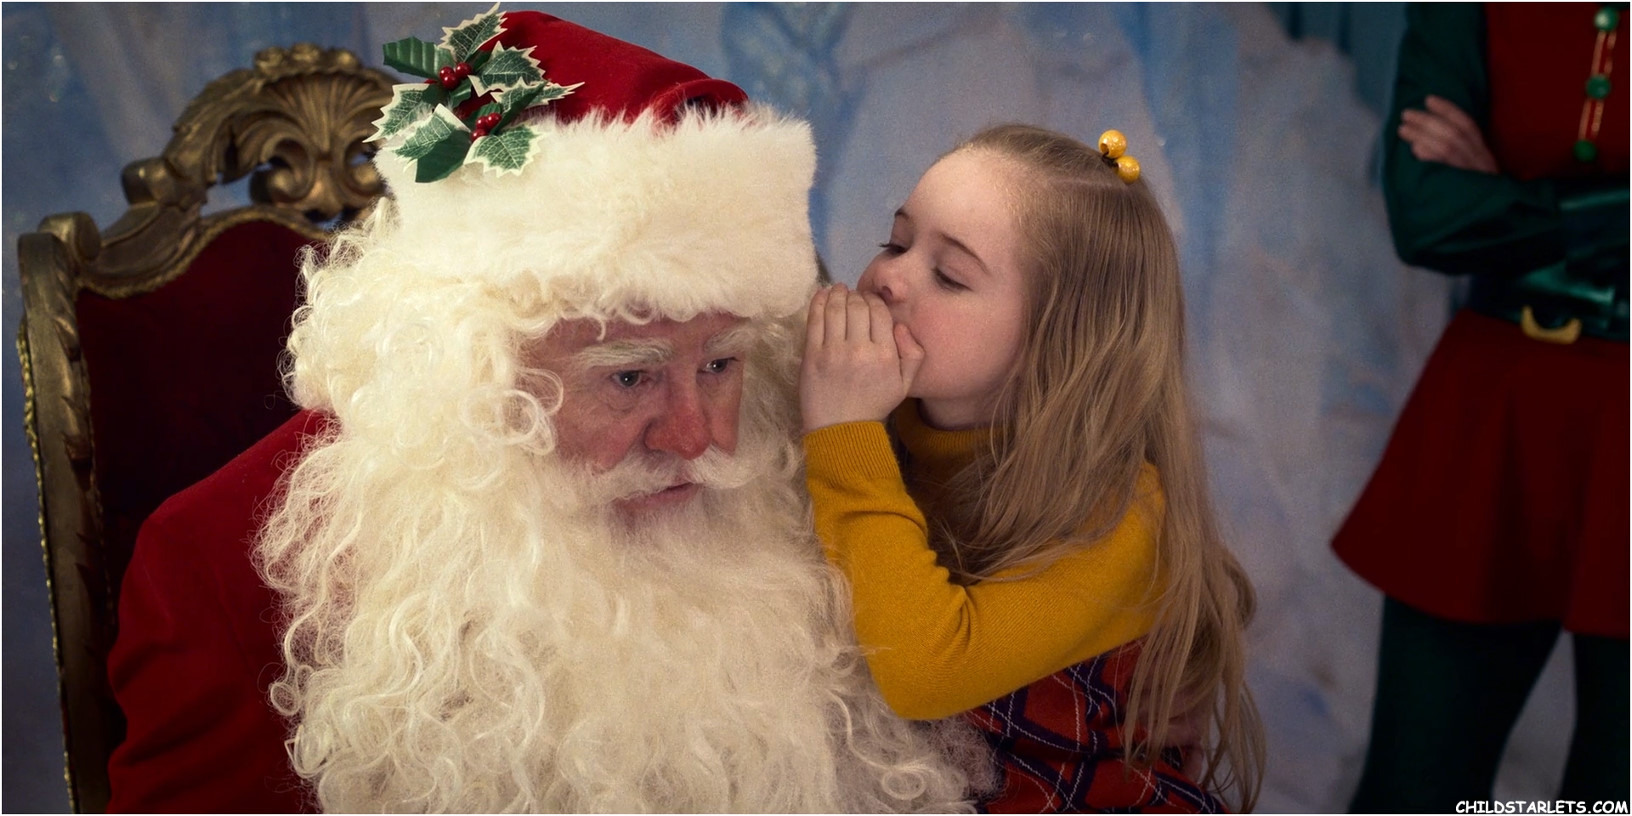 Julianna Layne
"A Christmas Story Christmas" - 2022/HD